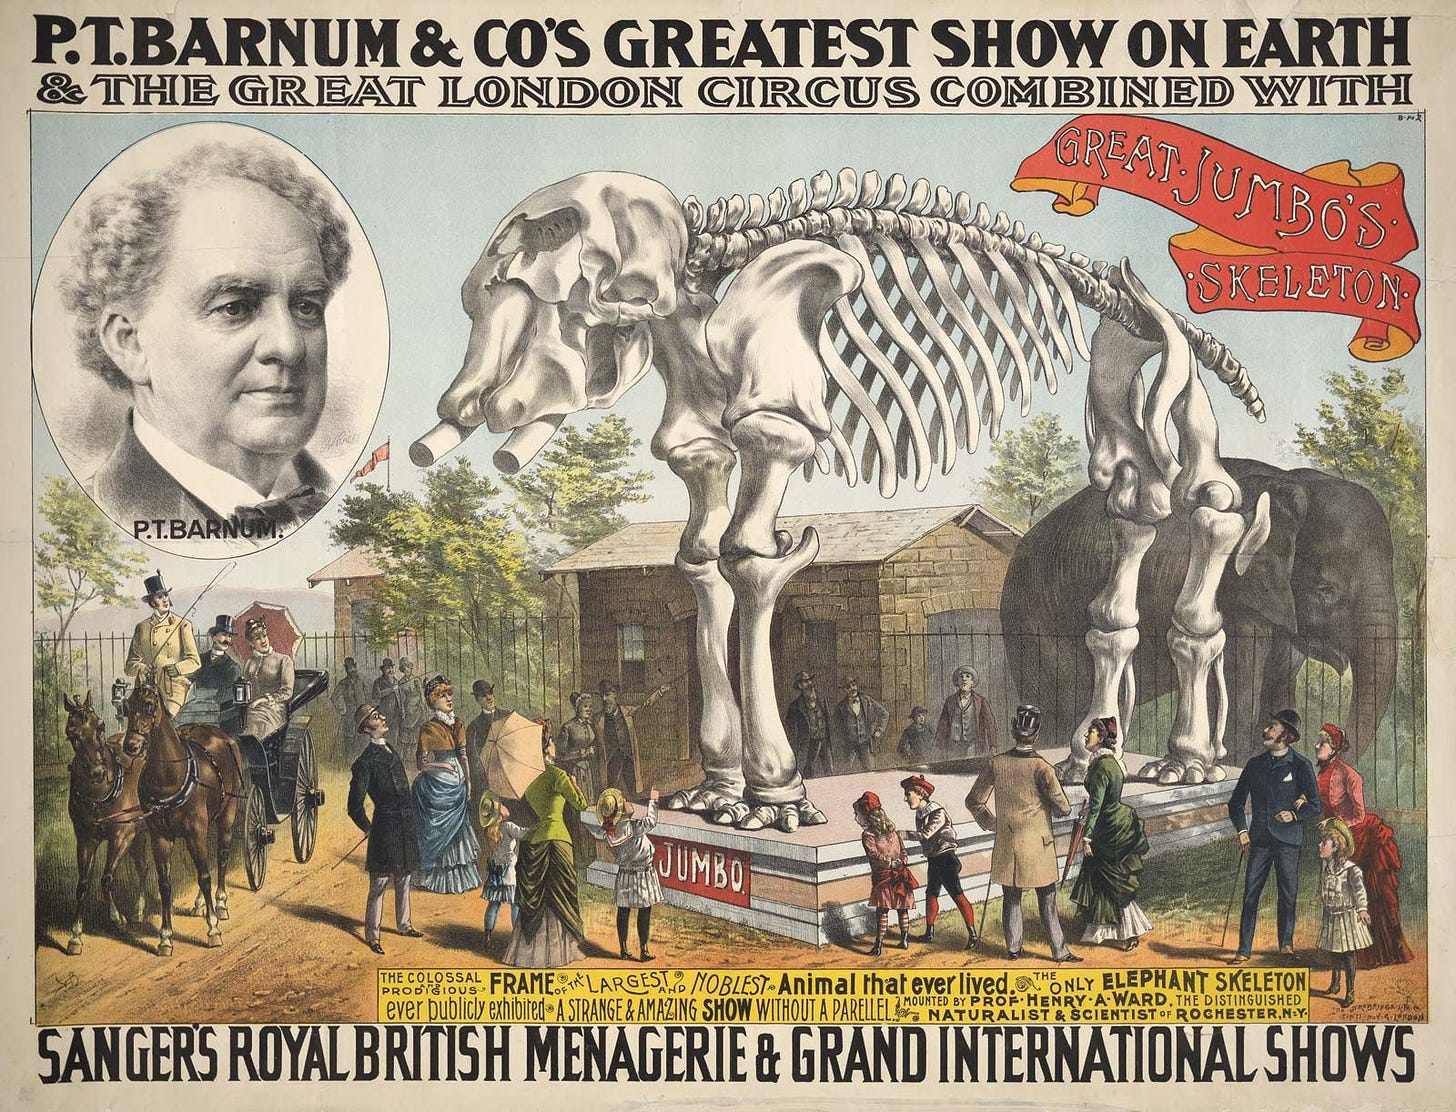 P.T. Barnum | Biography, Circus, Facts, & Quotes | Britannica